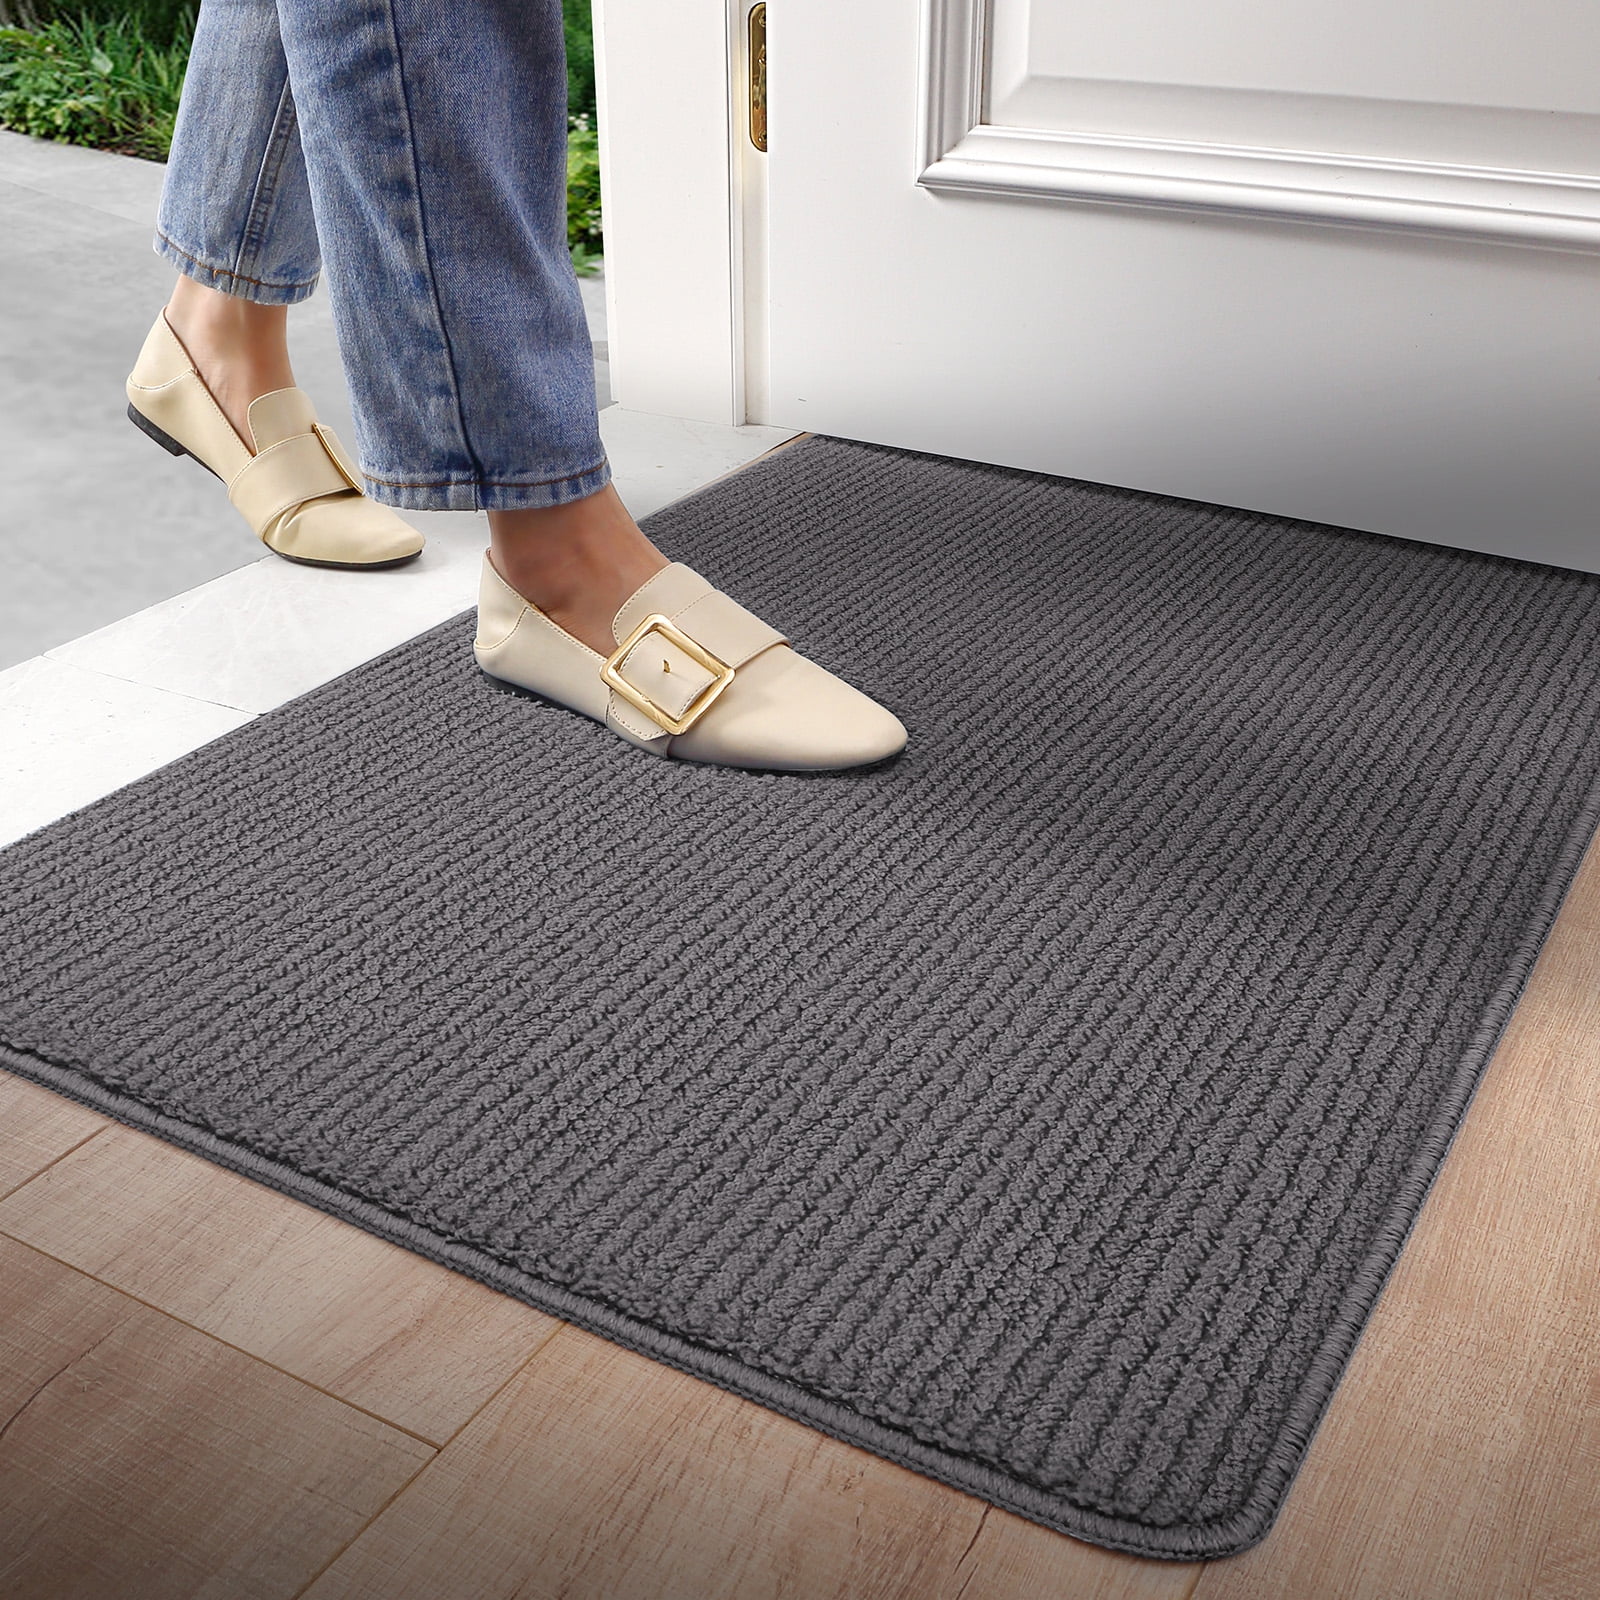 DEXI Indoor Doormat, Non Slip Absorbent Resist Dirt Entrance Rug, Machine  Washable Low-Profile Inside Floor Door Mat